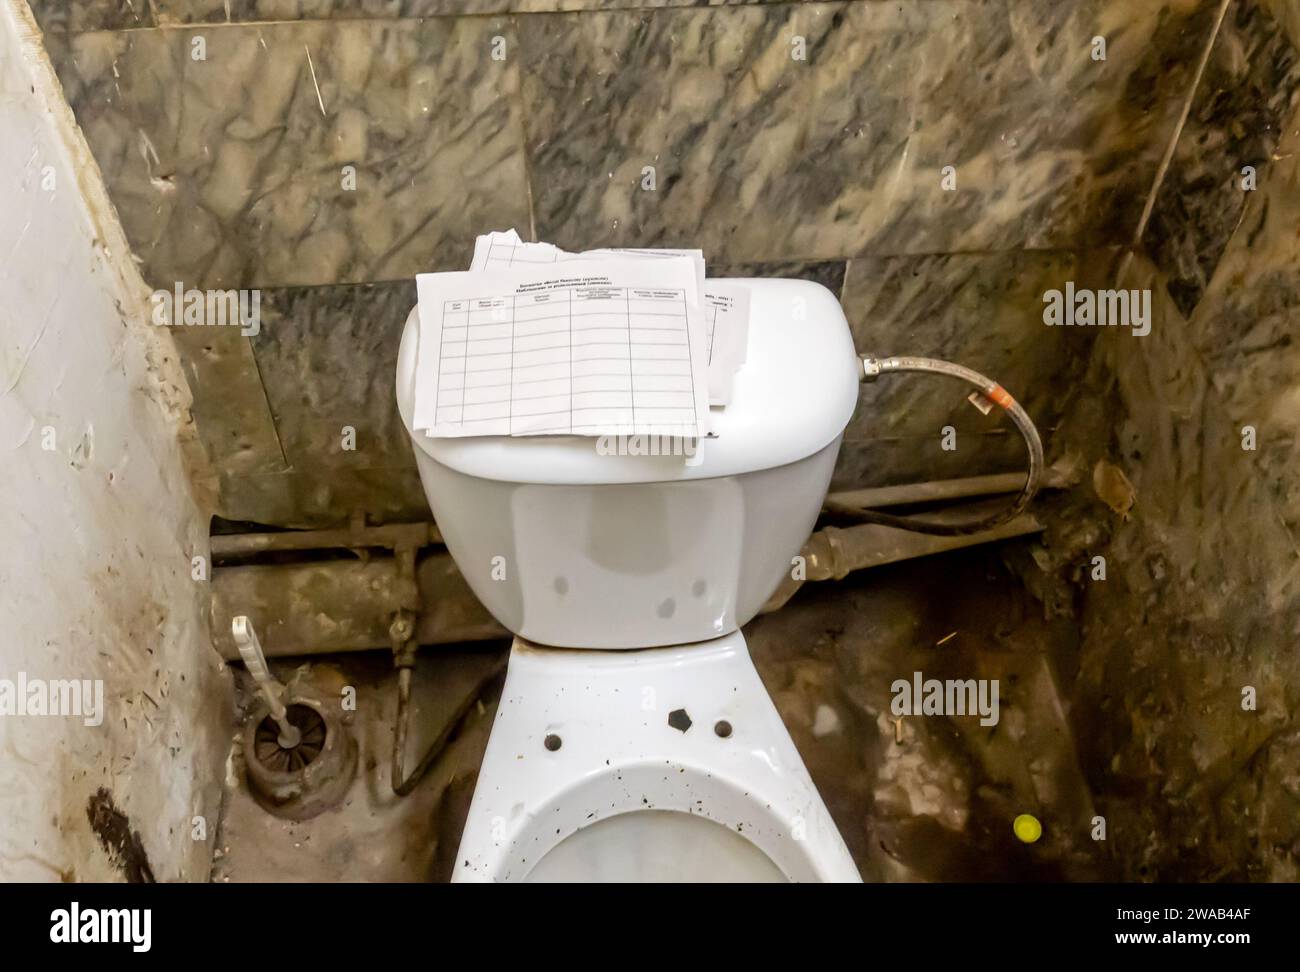 La disposizione dei servizi igienici del bagno era tipica dei servizi igienici pubblici dell'epoca sovietica, con carta strappata come carta igienica Foto Stock